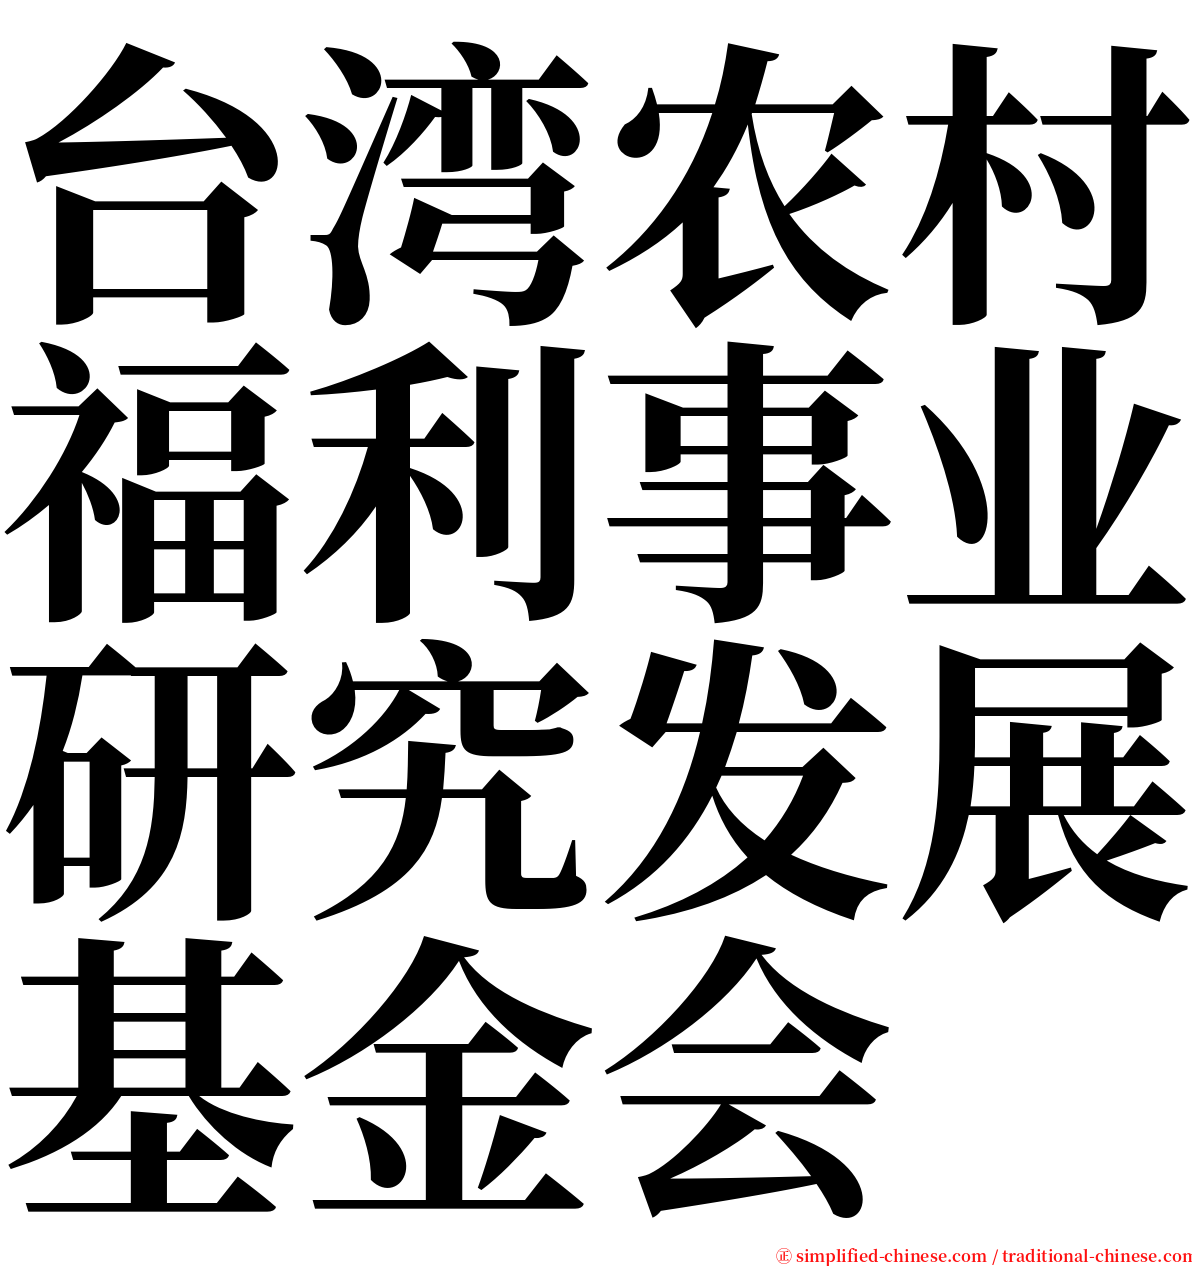 台湾农村福利事业研究发展基金会 serif font